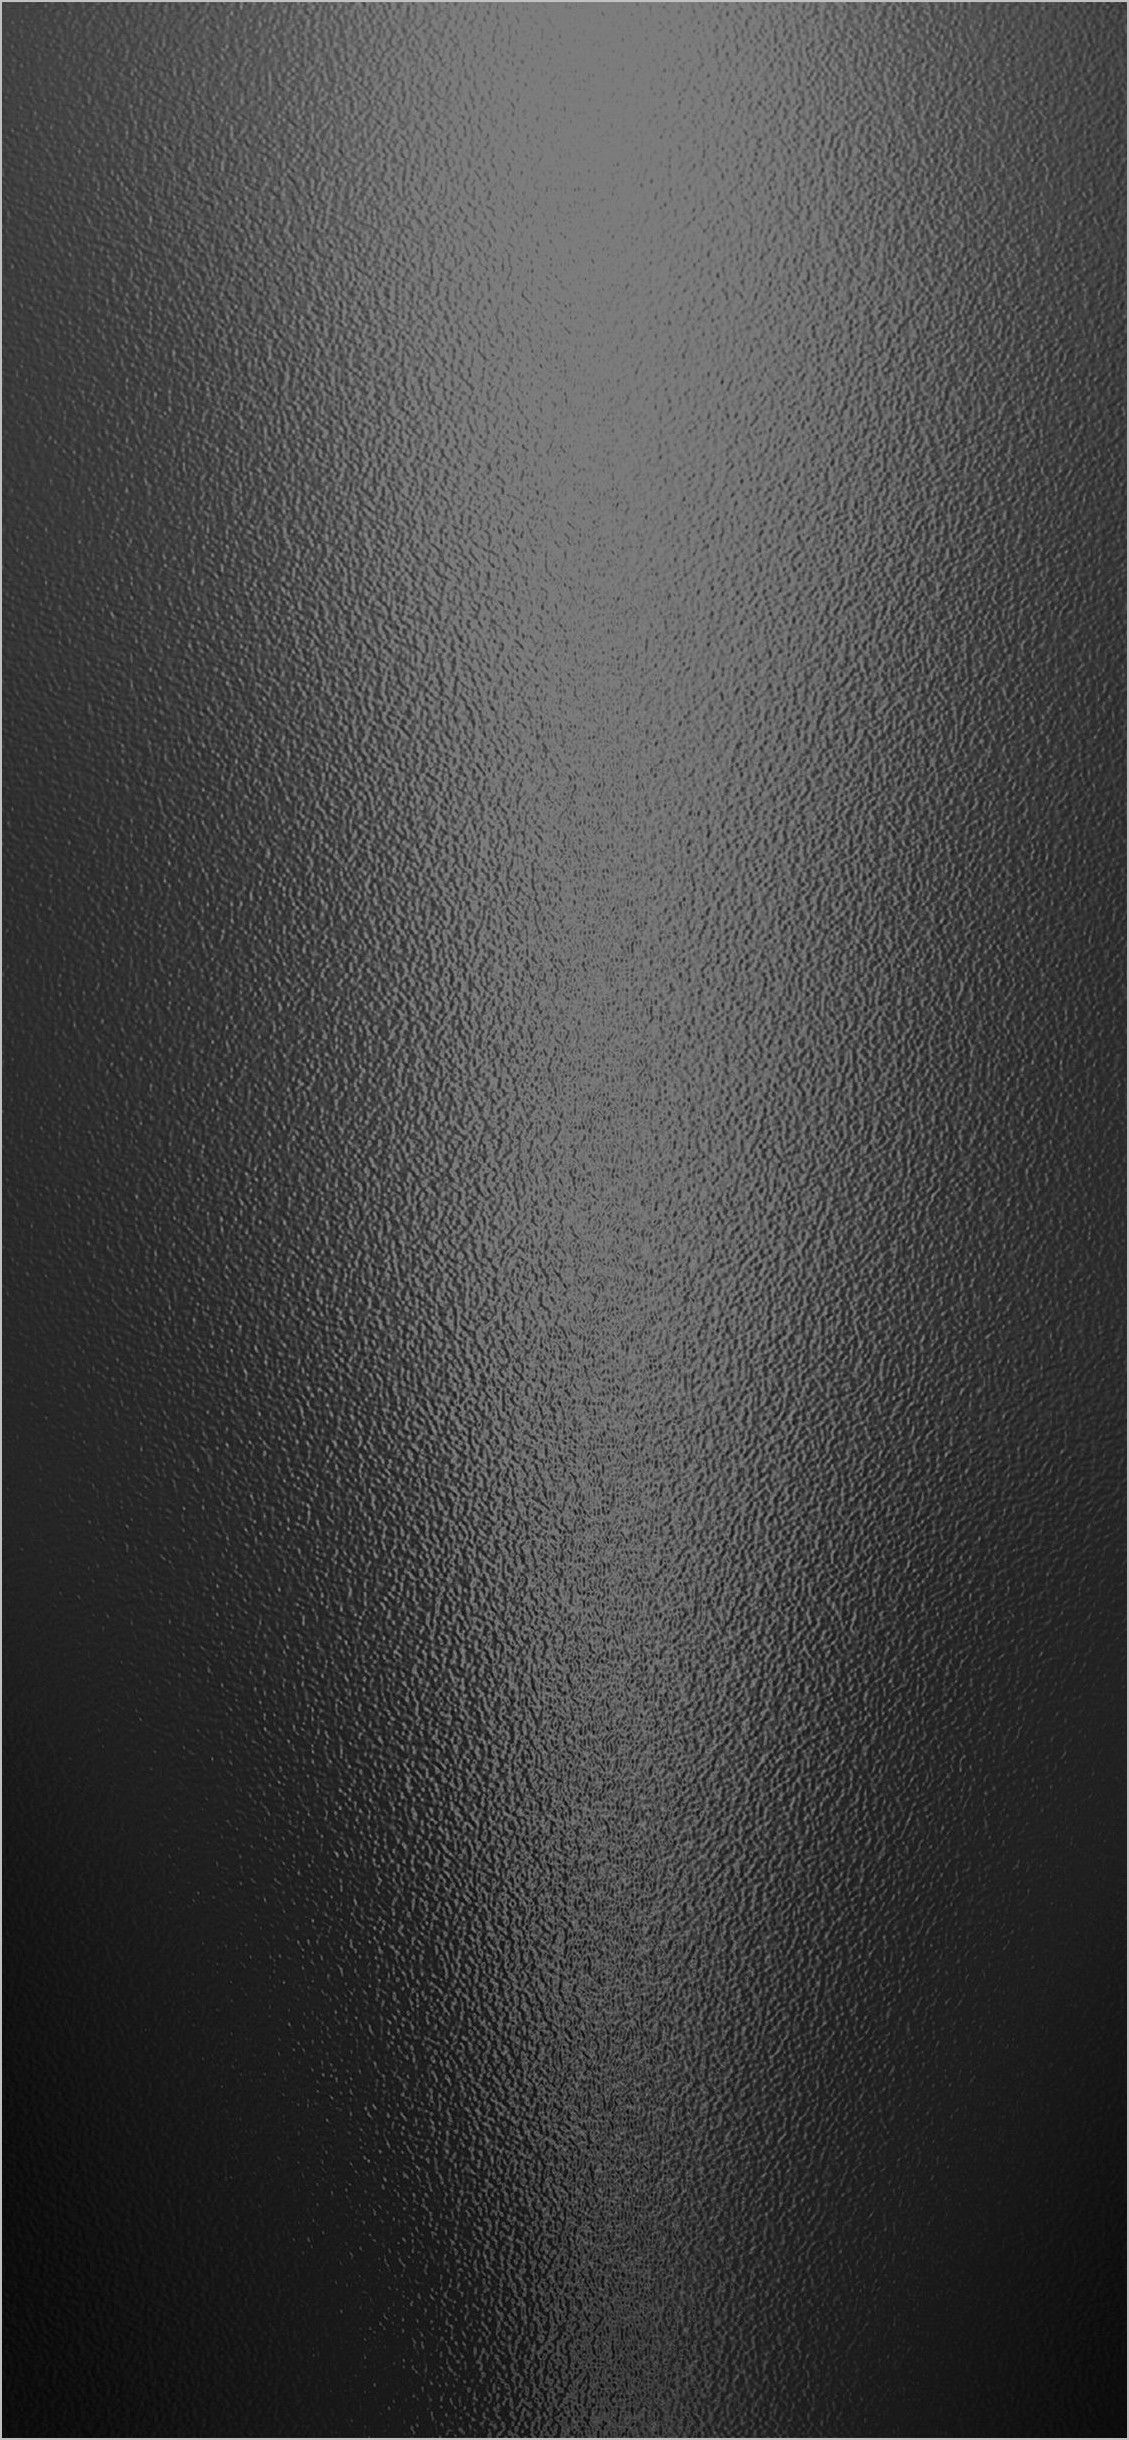 Brushed Steel 4k Wallpaper. Brushed steel, Wallpaper, Background image